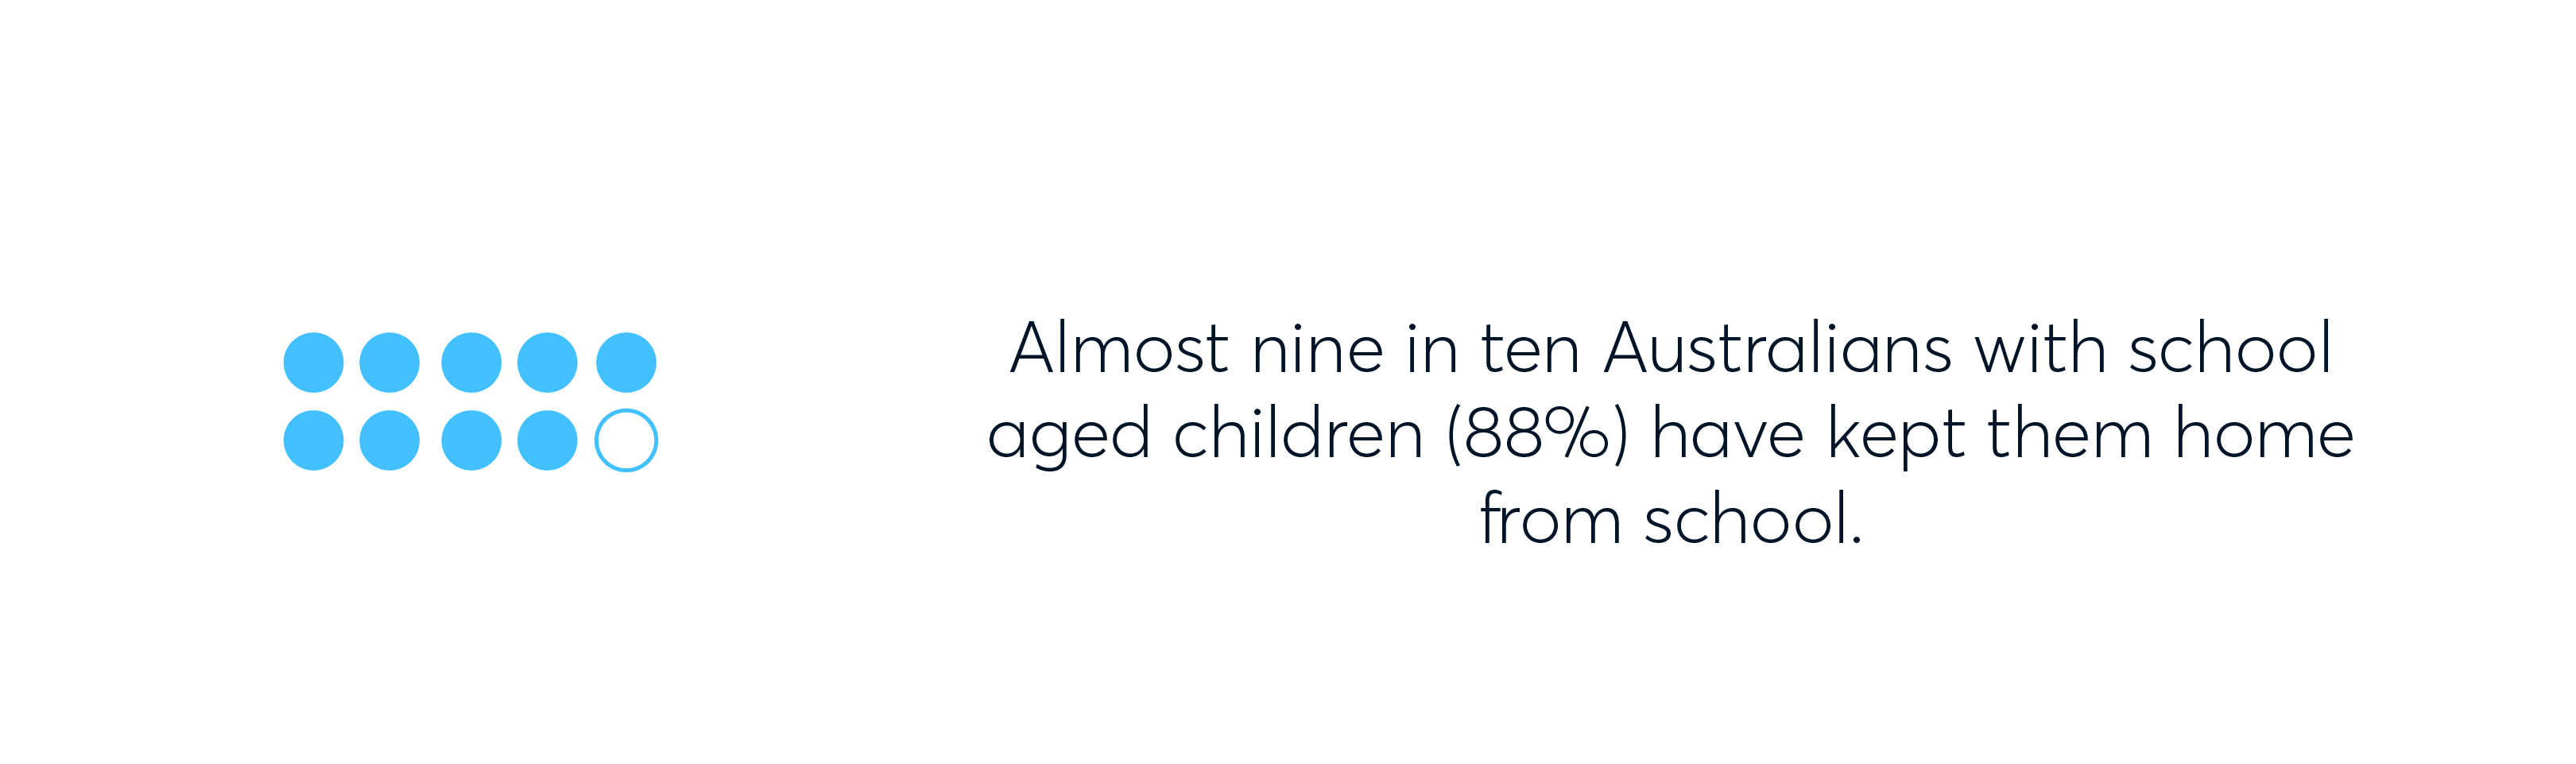 Almost 9 in ten Australian parents have kept they children home from school